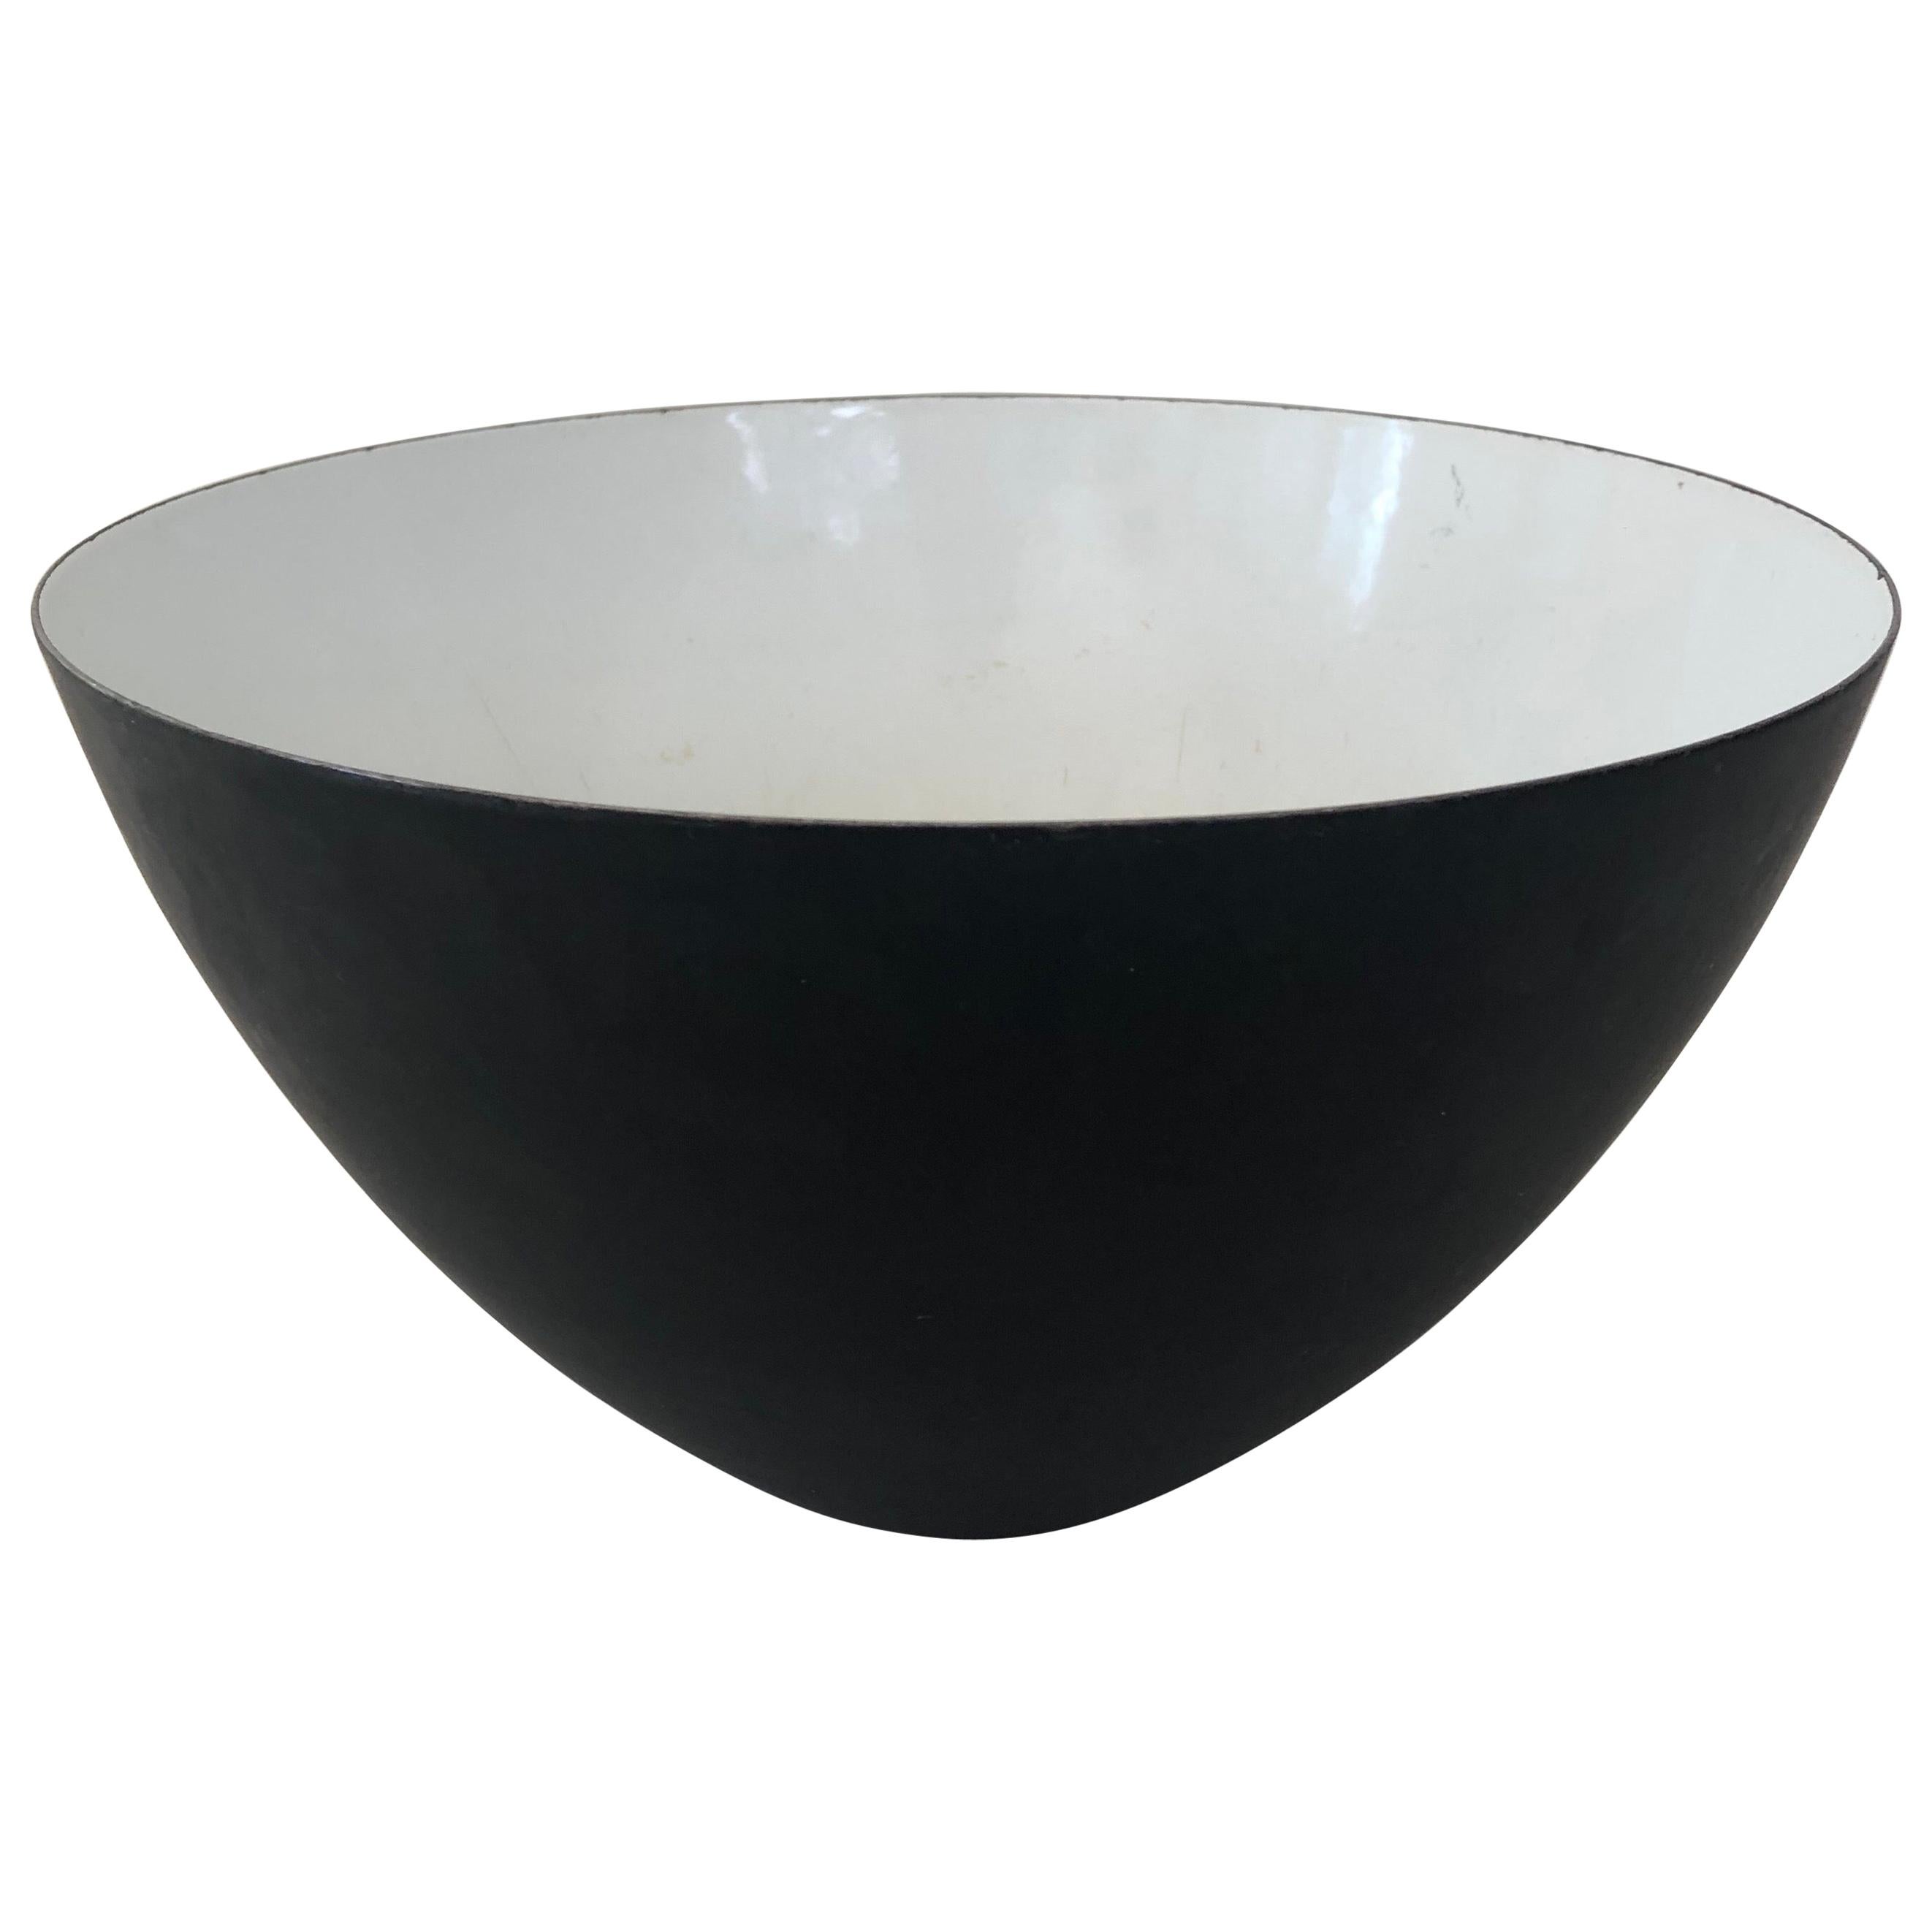 Black and White Enamel Krenit Bowl by Herbert Krenchel